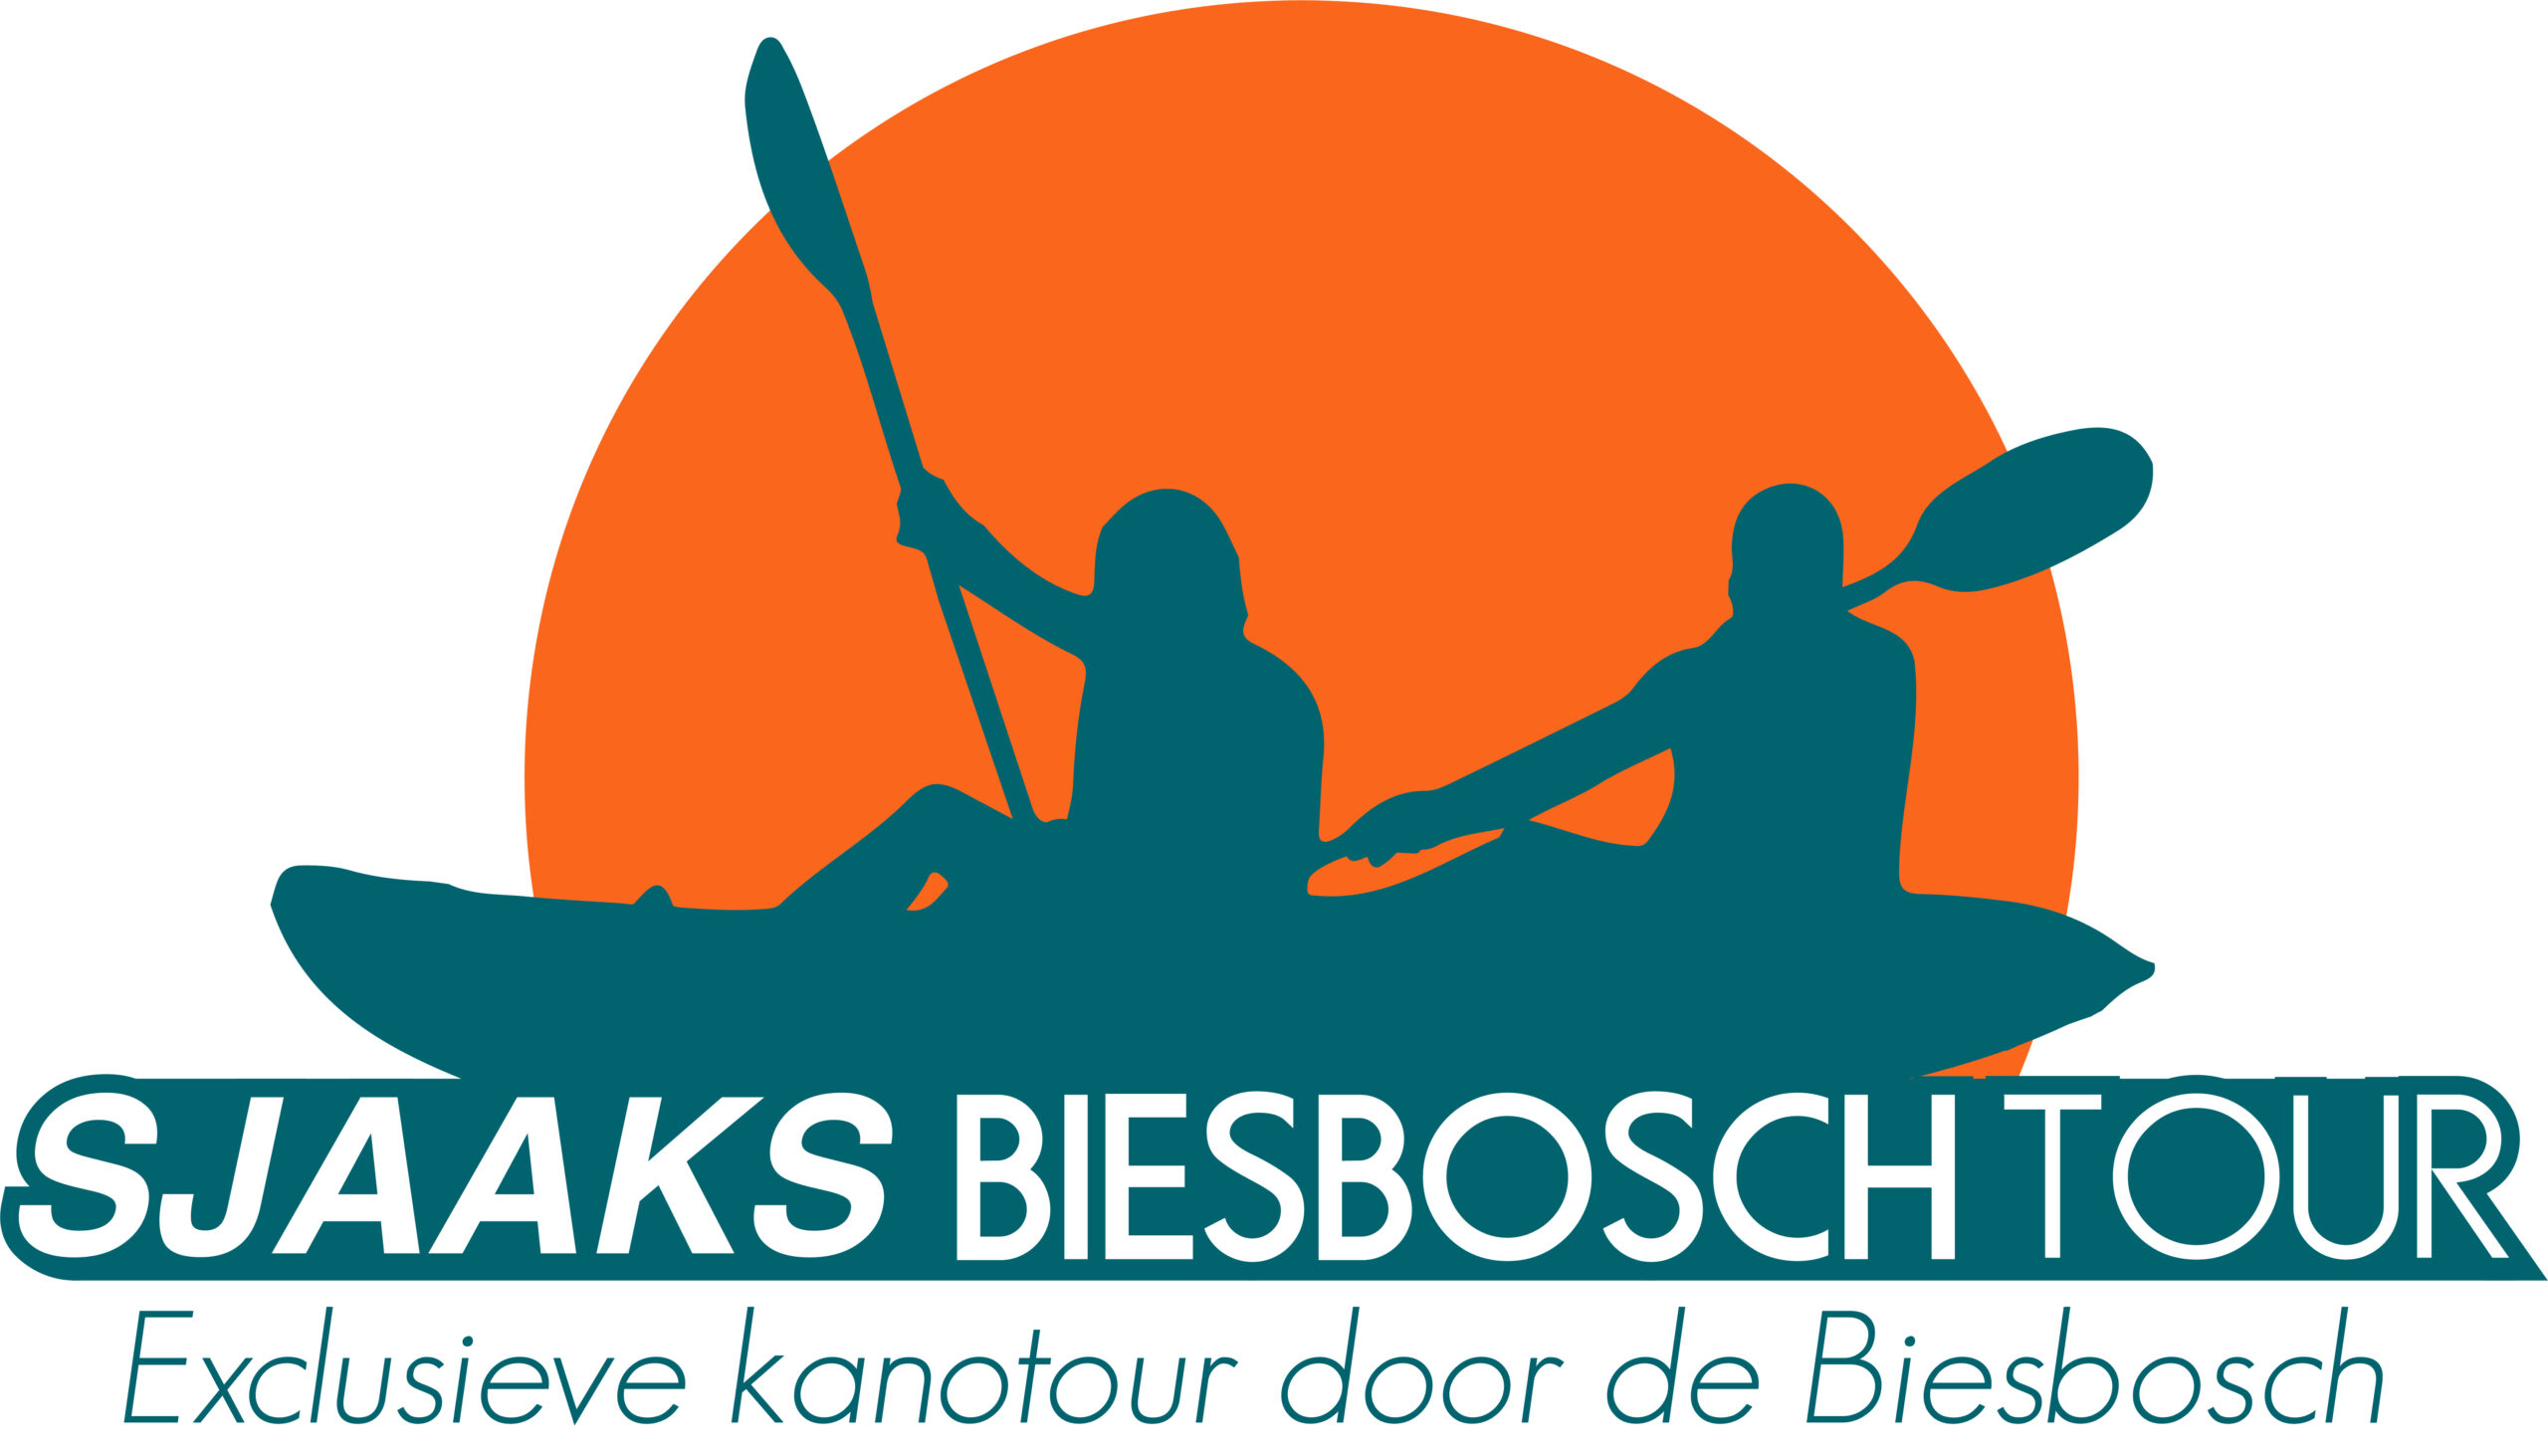 Sjaaks Biesbosch Tour